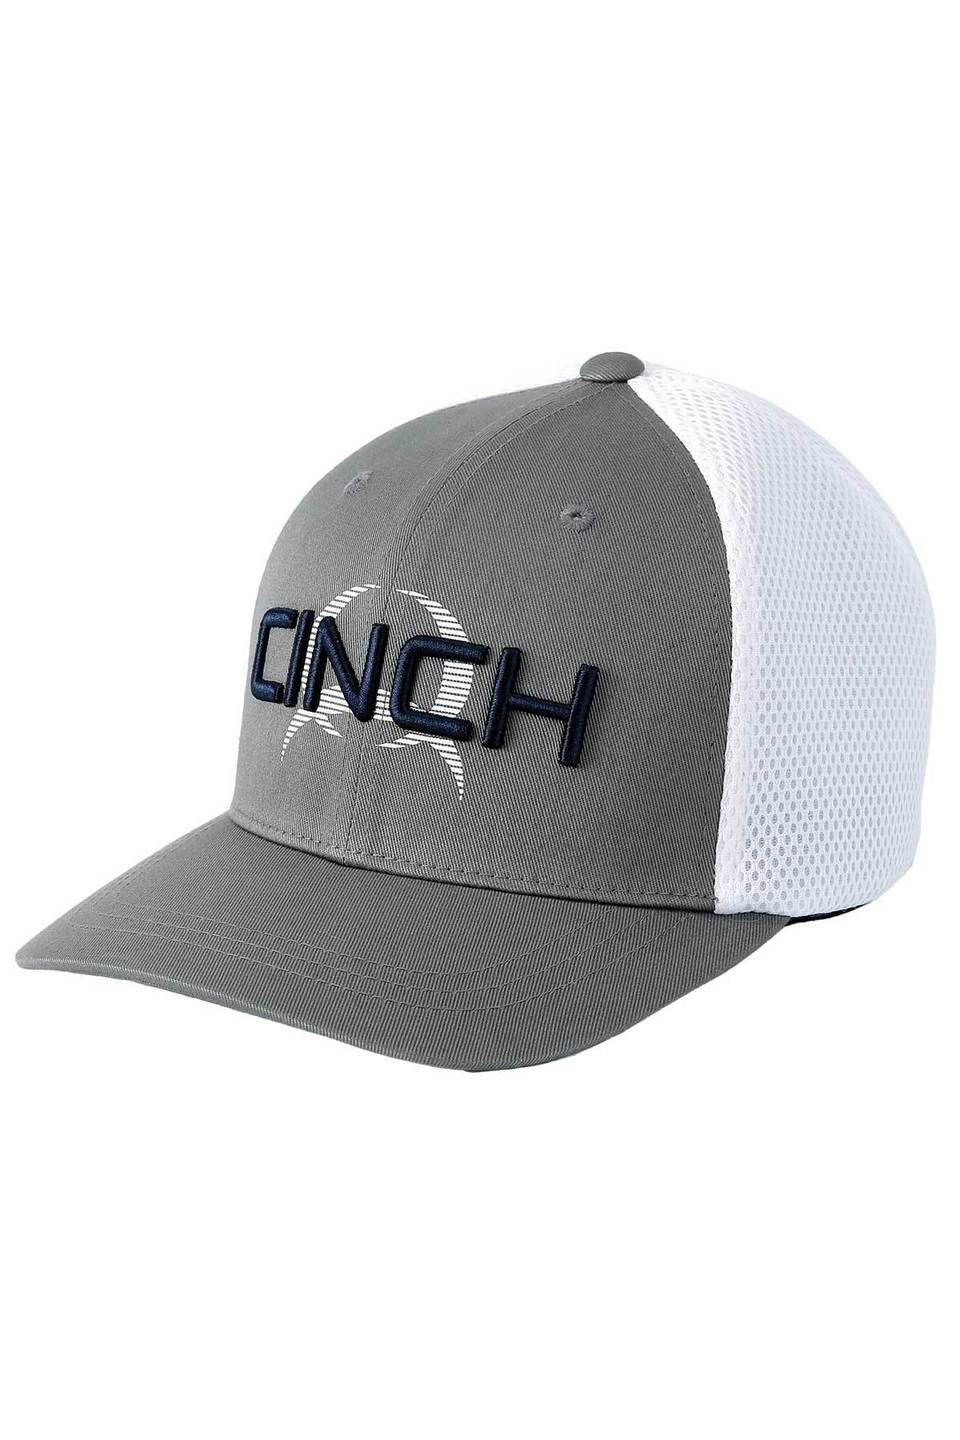 Cinch Flexfit Logo Grey/White Ballcap